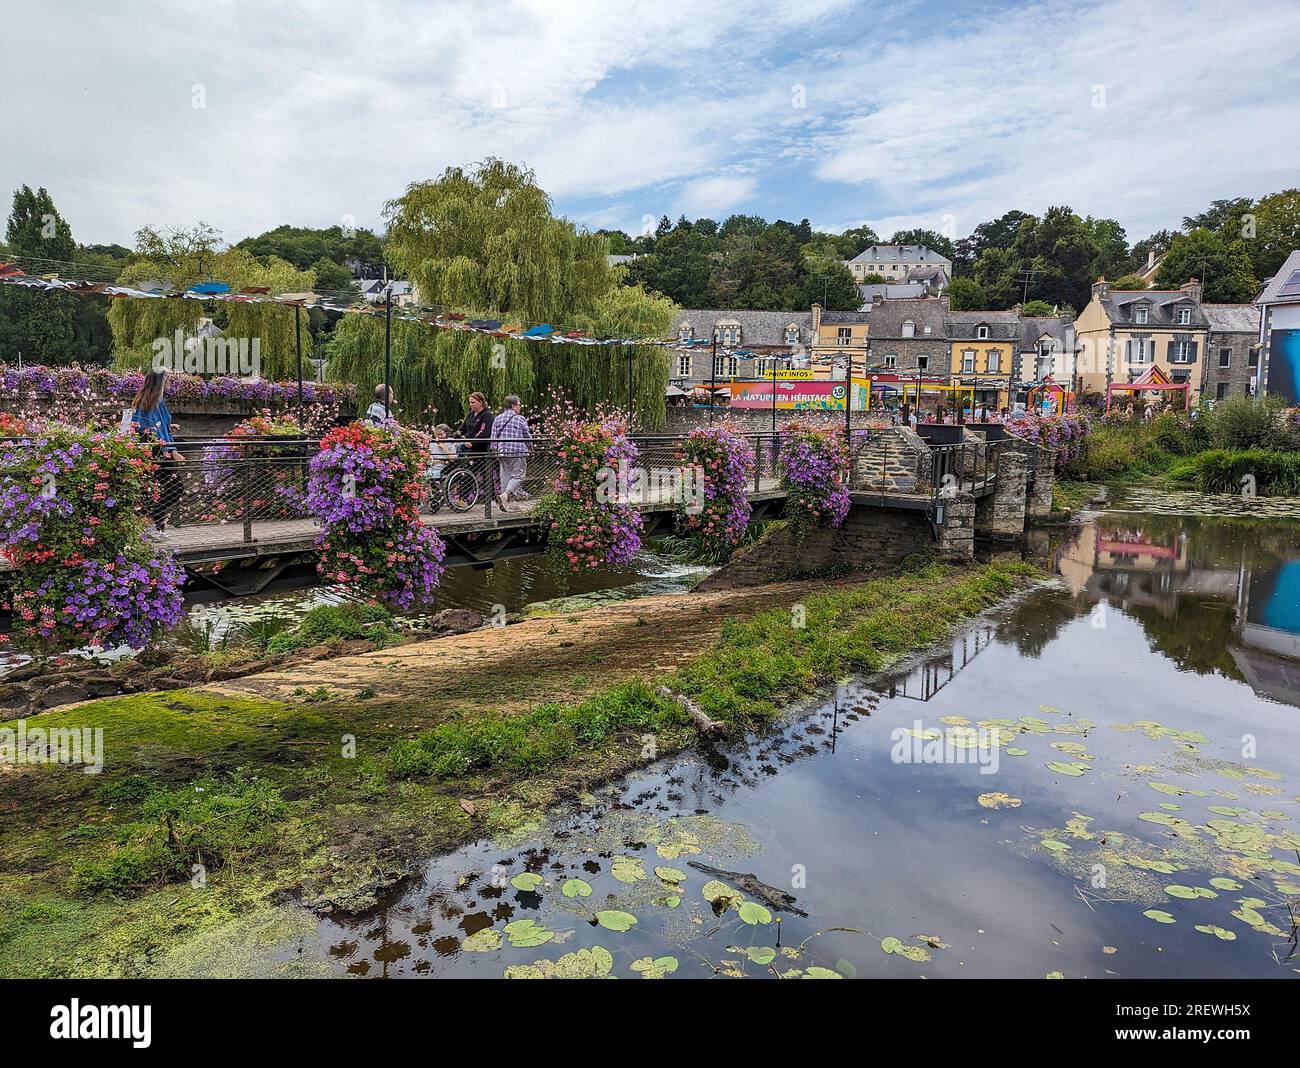 C) Denis TRASFI / MAXPPP - France, Bretagne, Morbihan, Maison Yves Rocher à Gacilly le 20 juillet 2023 - Pont piéton fleuri au-dessus de la rivière L. Stockfoto